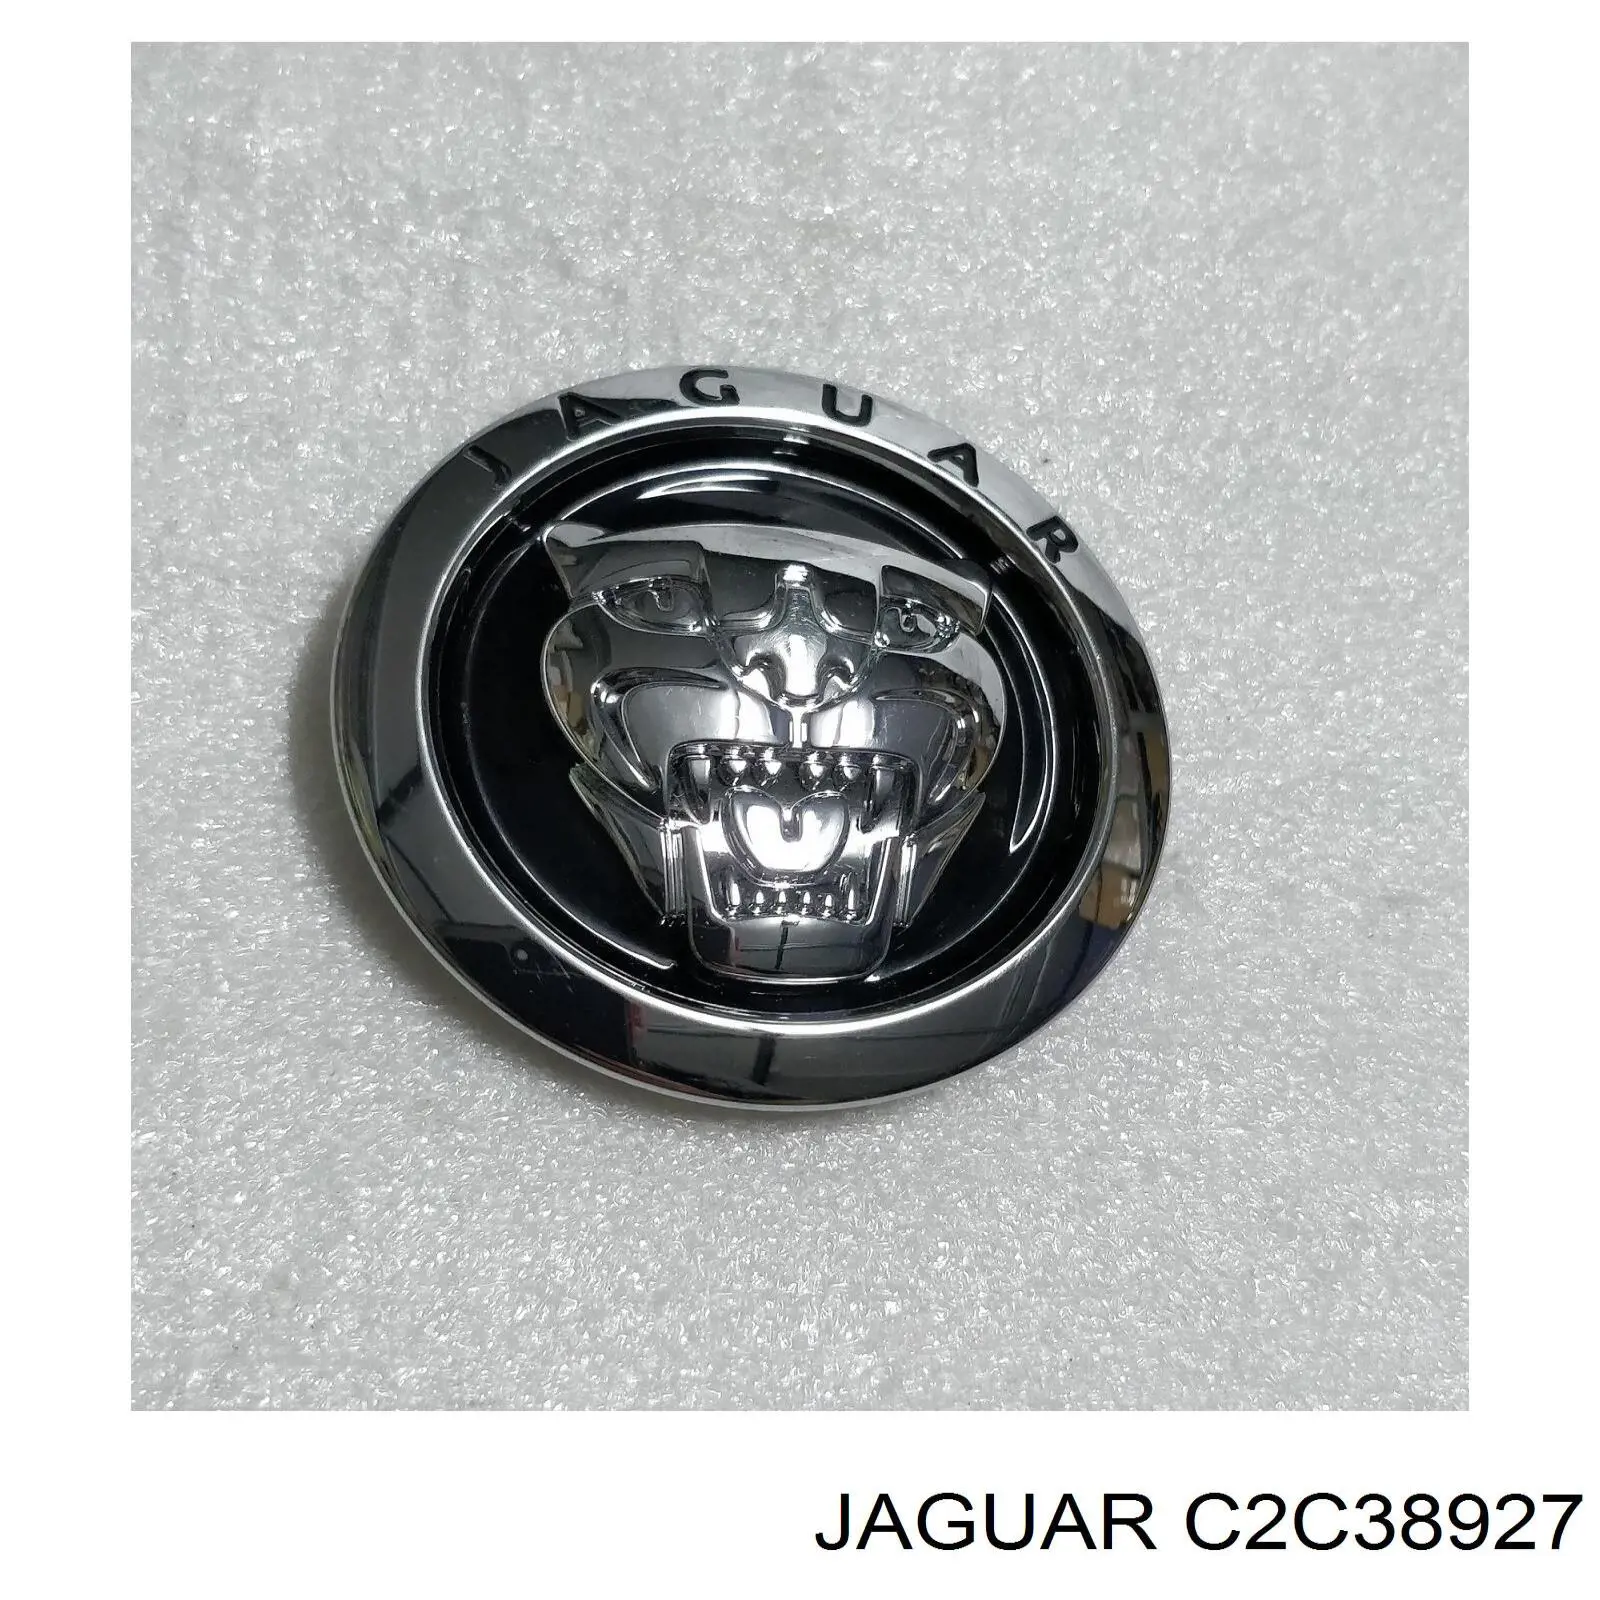 C2C38927 Jaguar